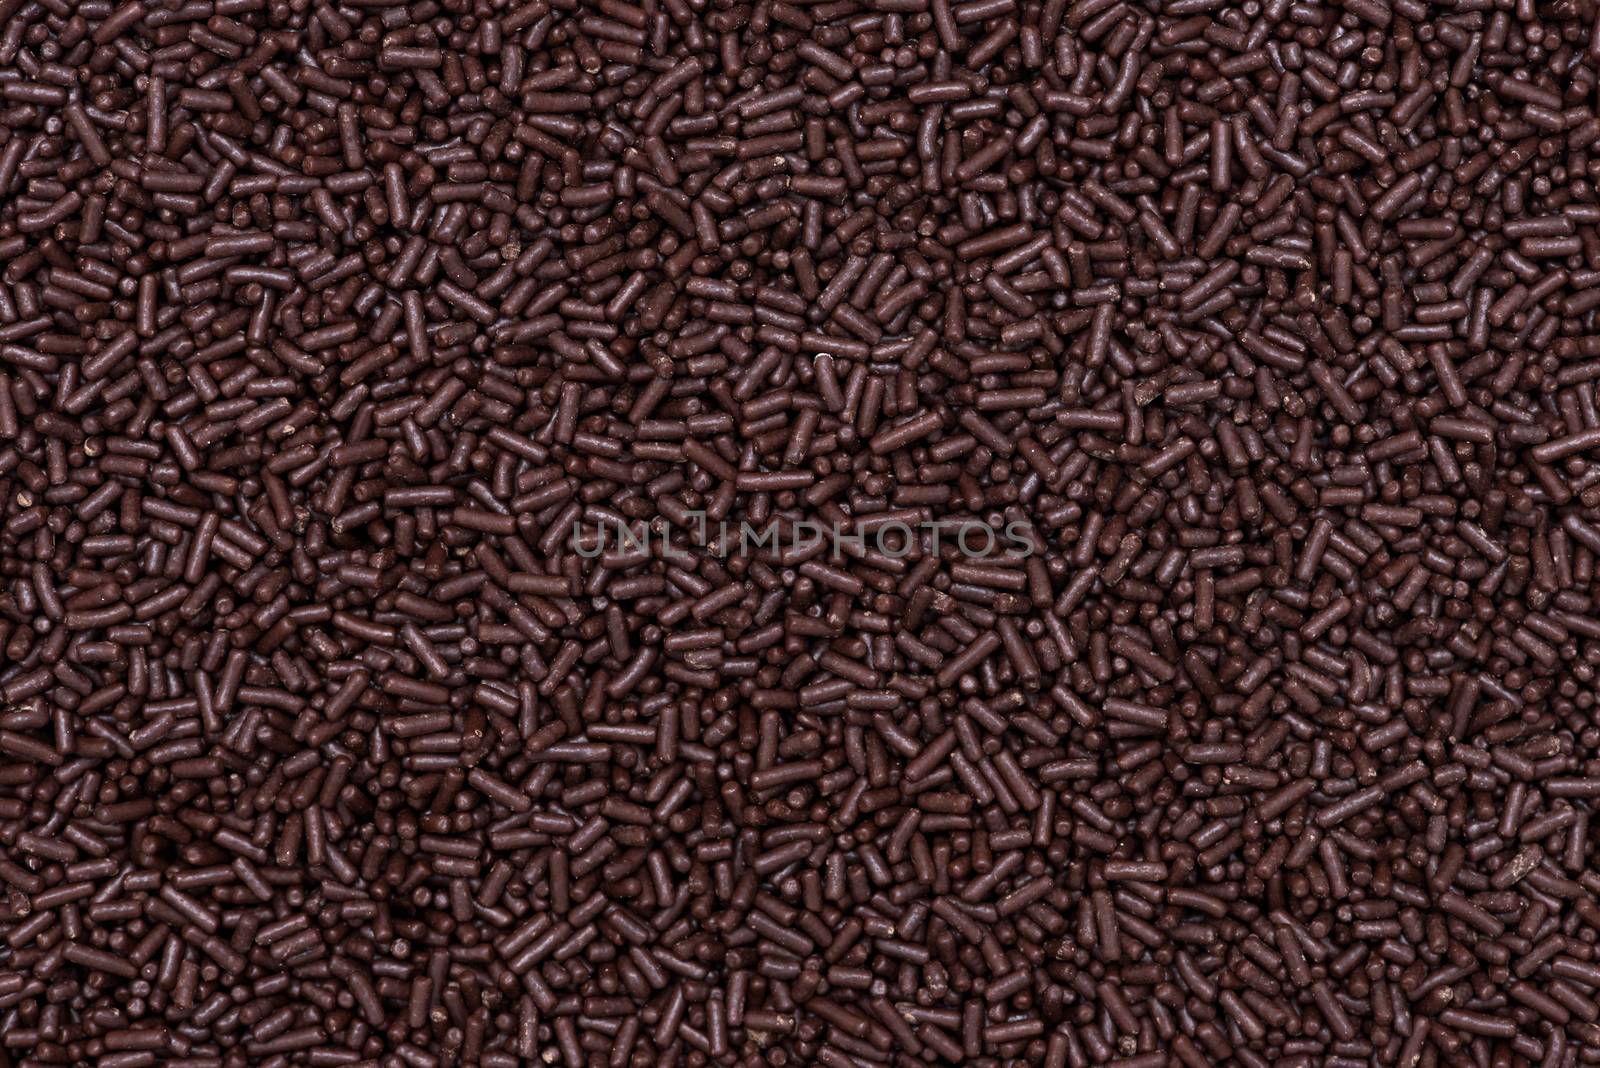 Macro texture of chocolate sprinkles